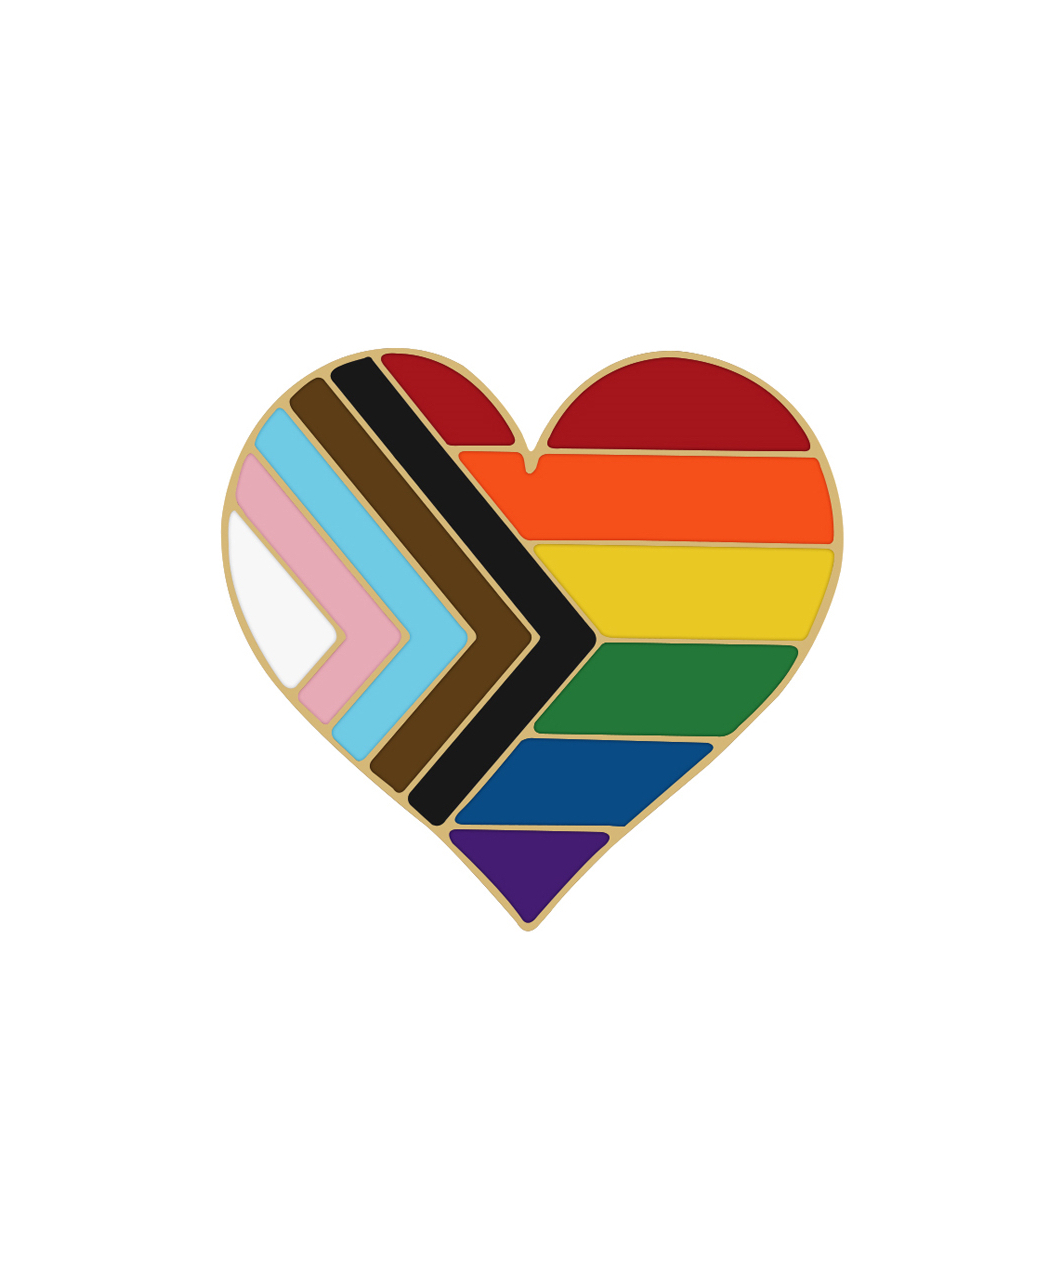 Rainbow Pride петличный значок прогрессивного флага ЛГБТ Сердце